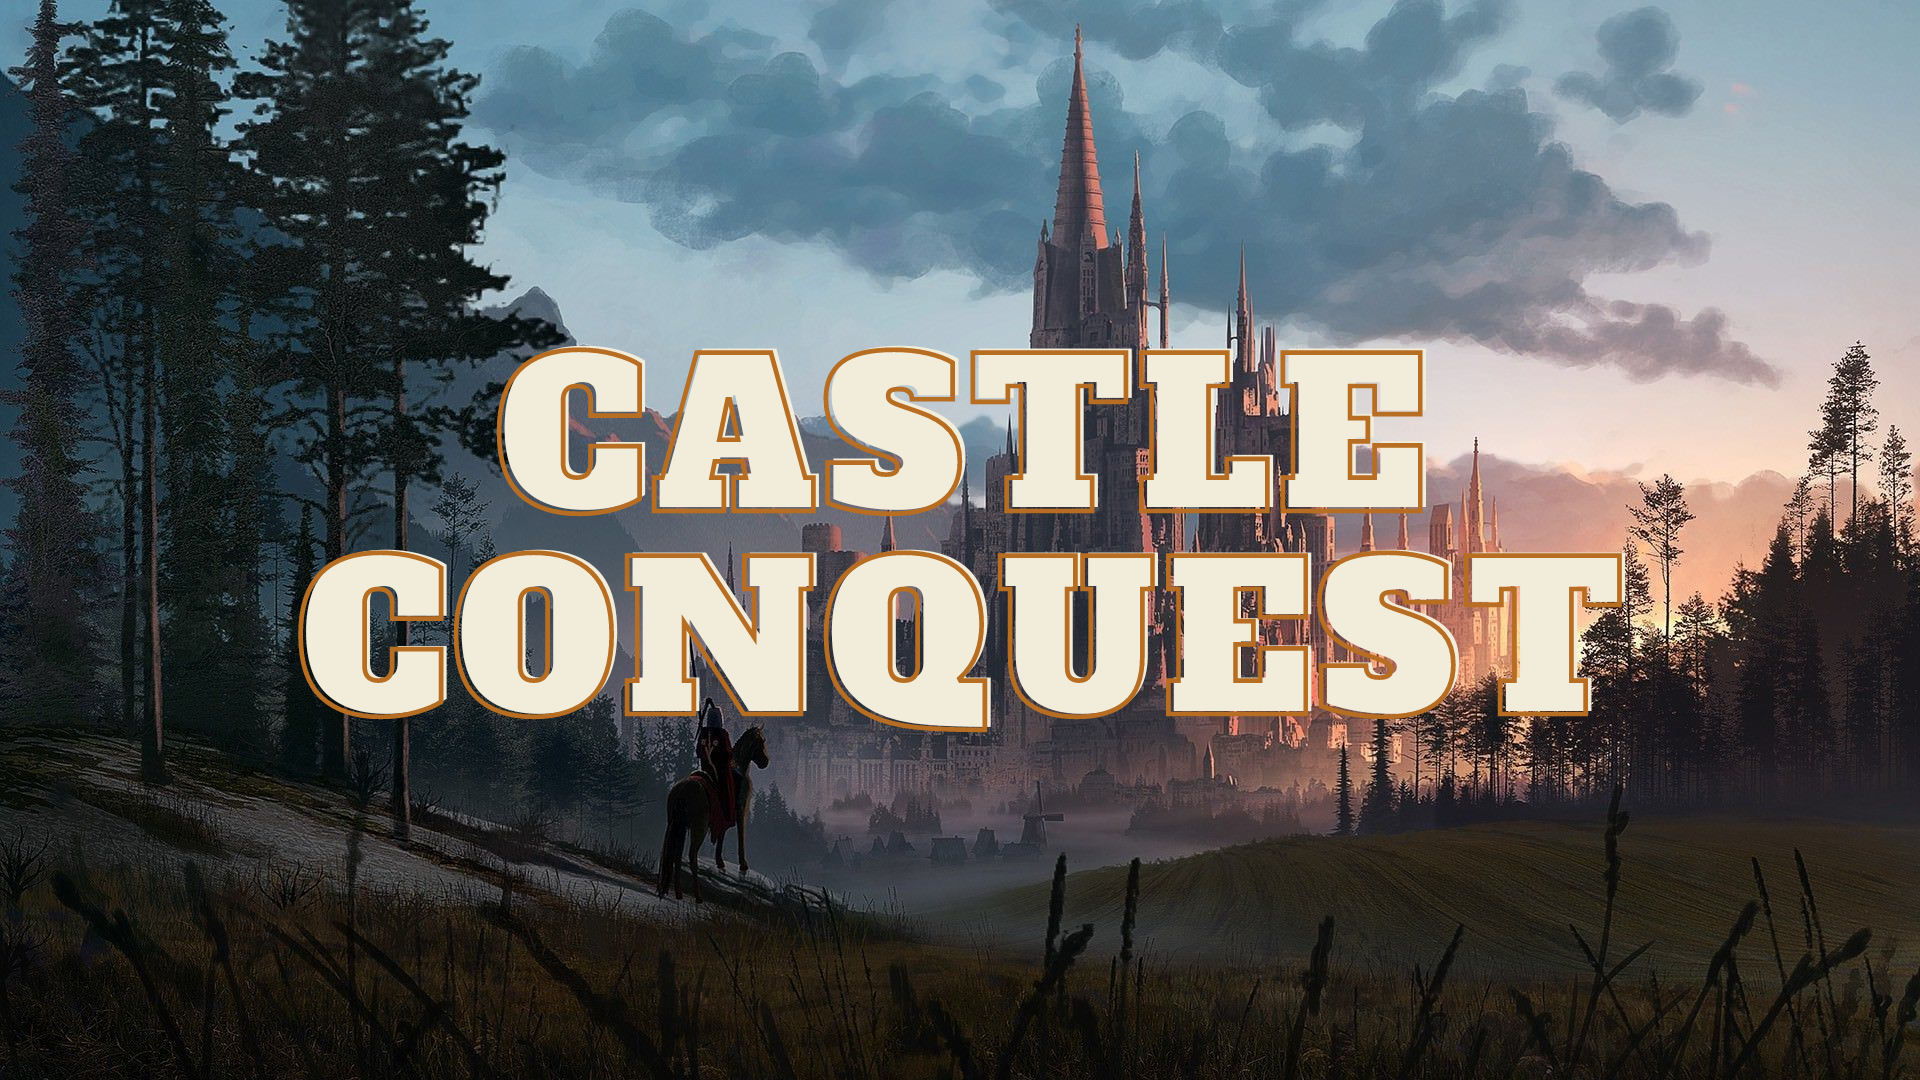 Castle Conquest